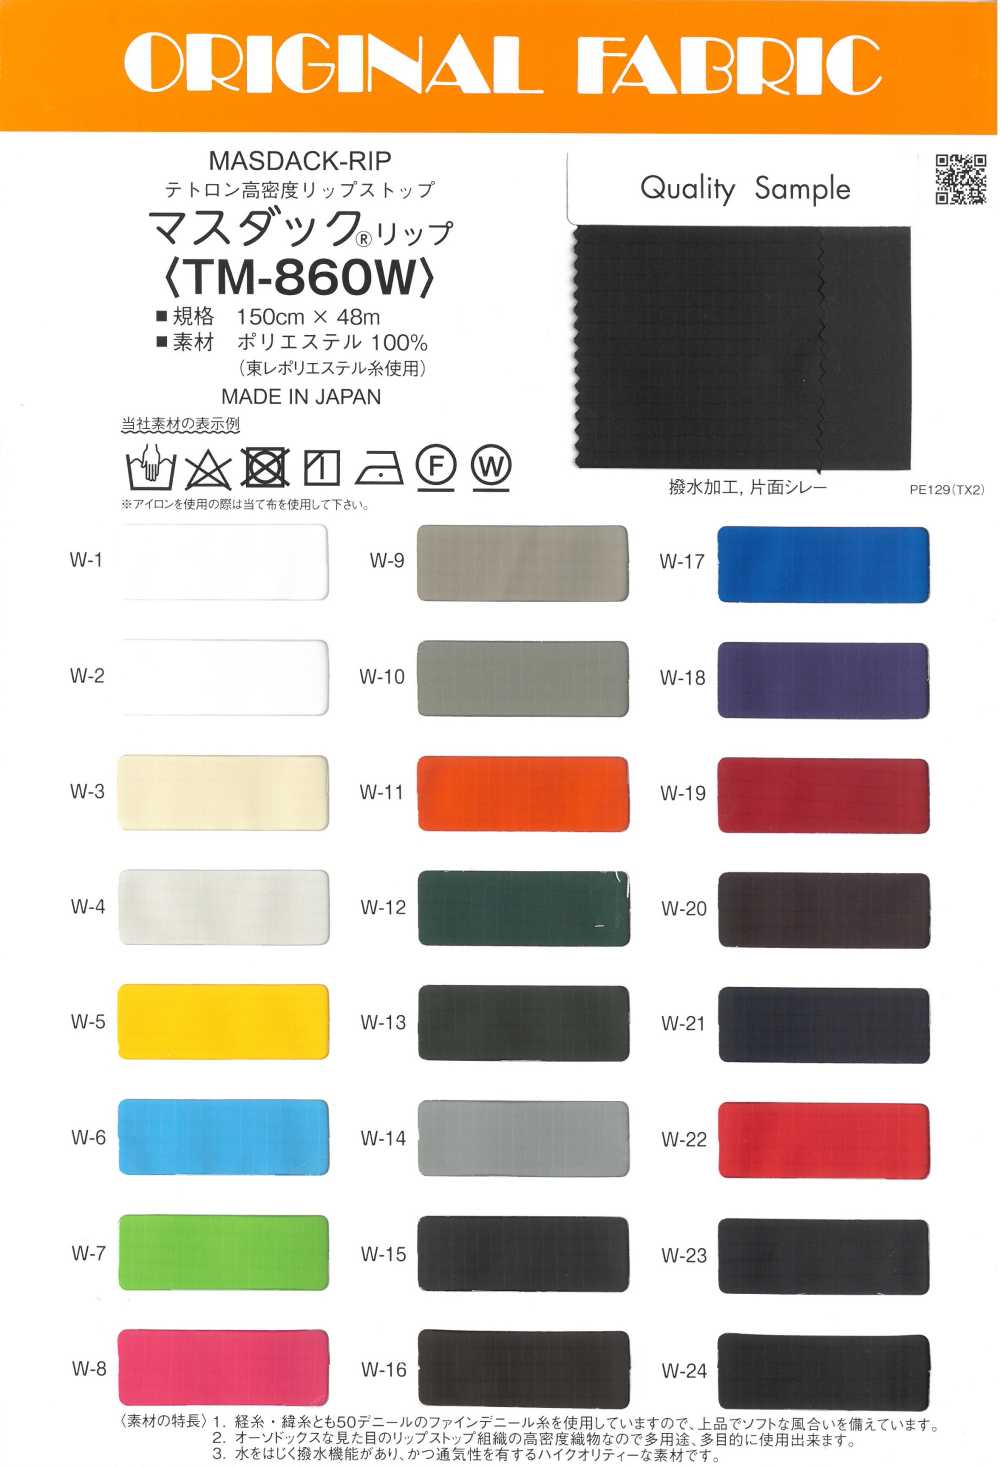 TM860W Masdaq® Lip Tetron Ripstop De Alta Densidade[Têxtil / Tecido] Masuda